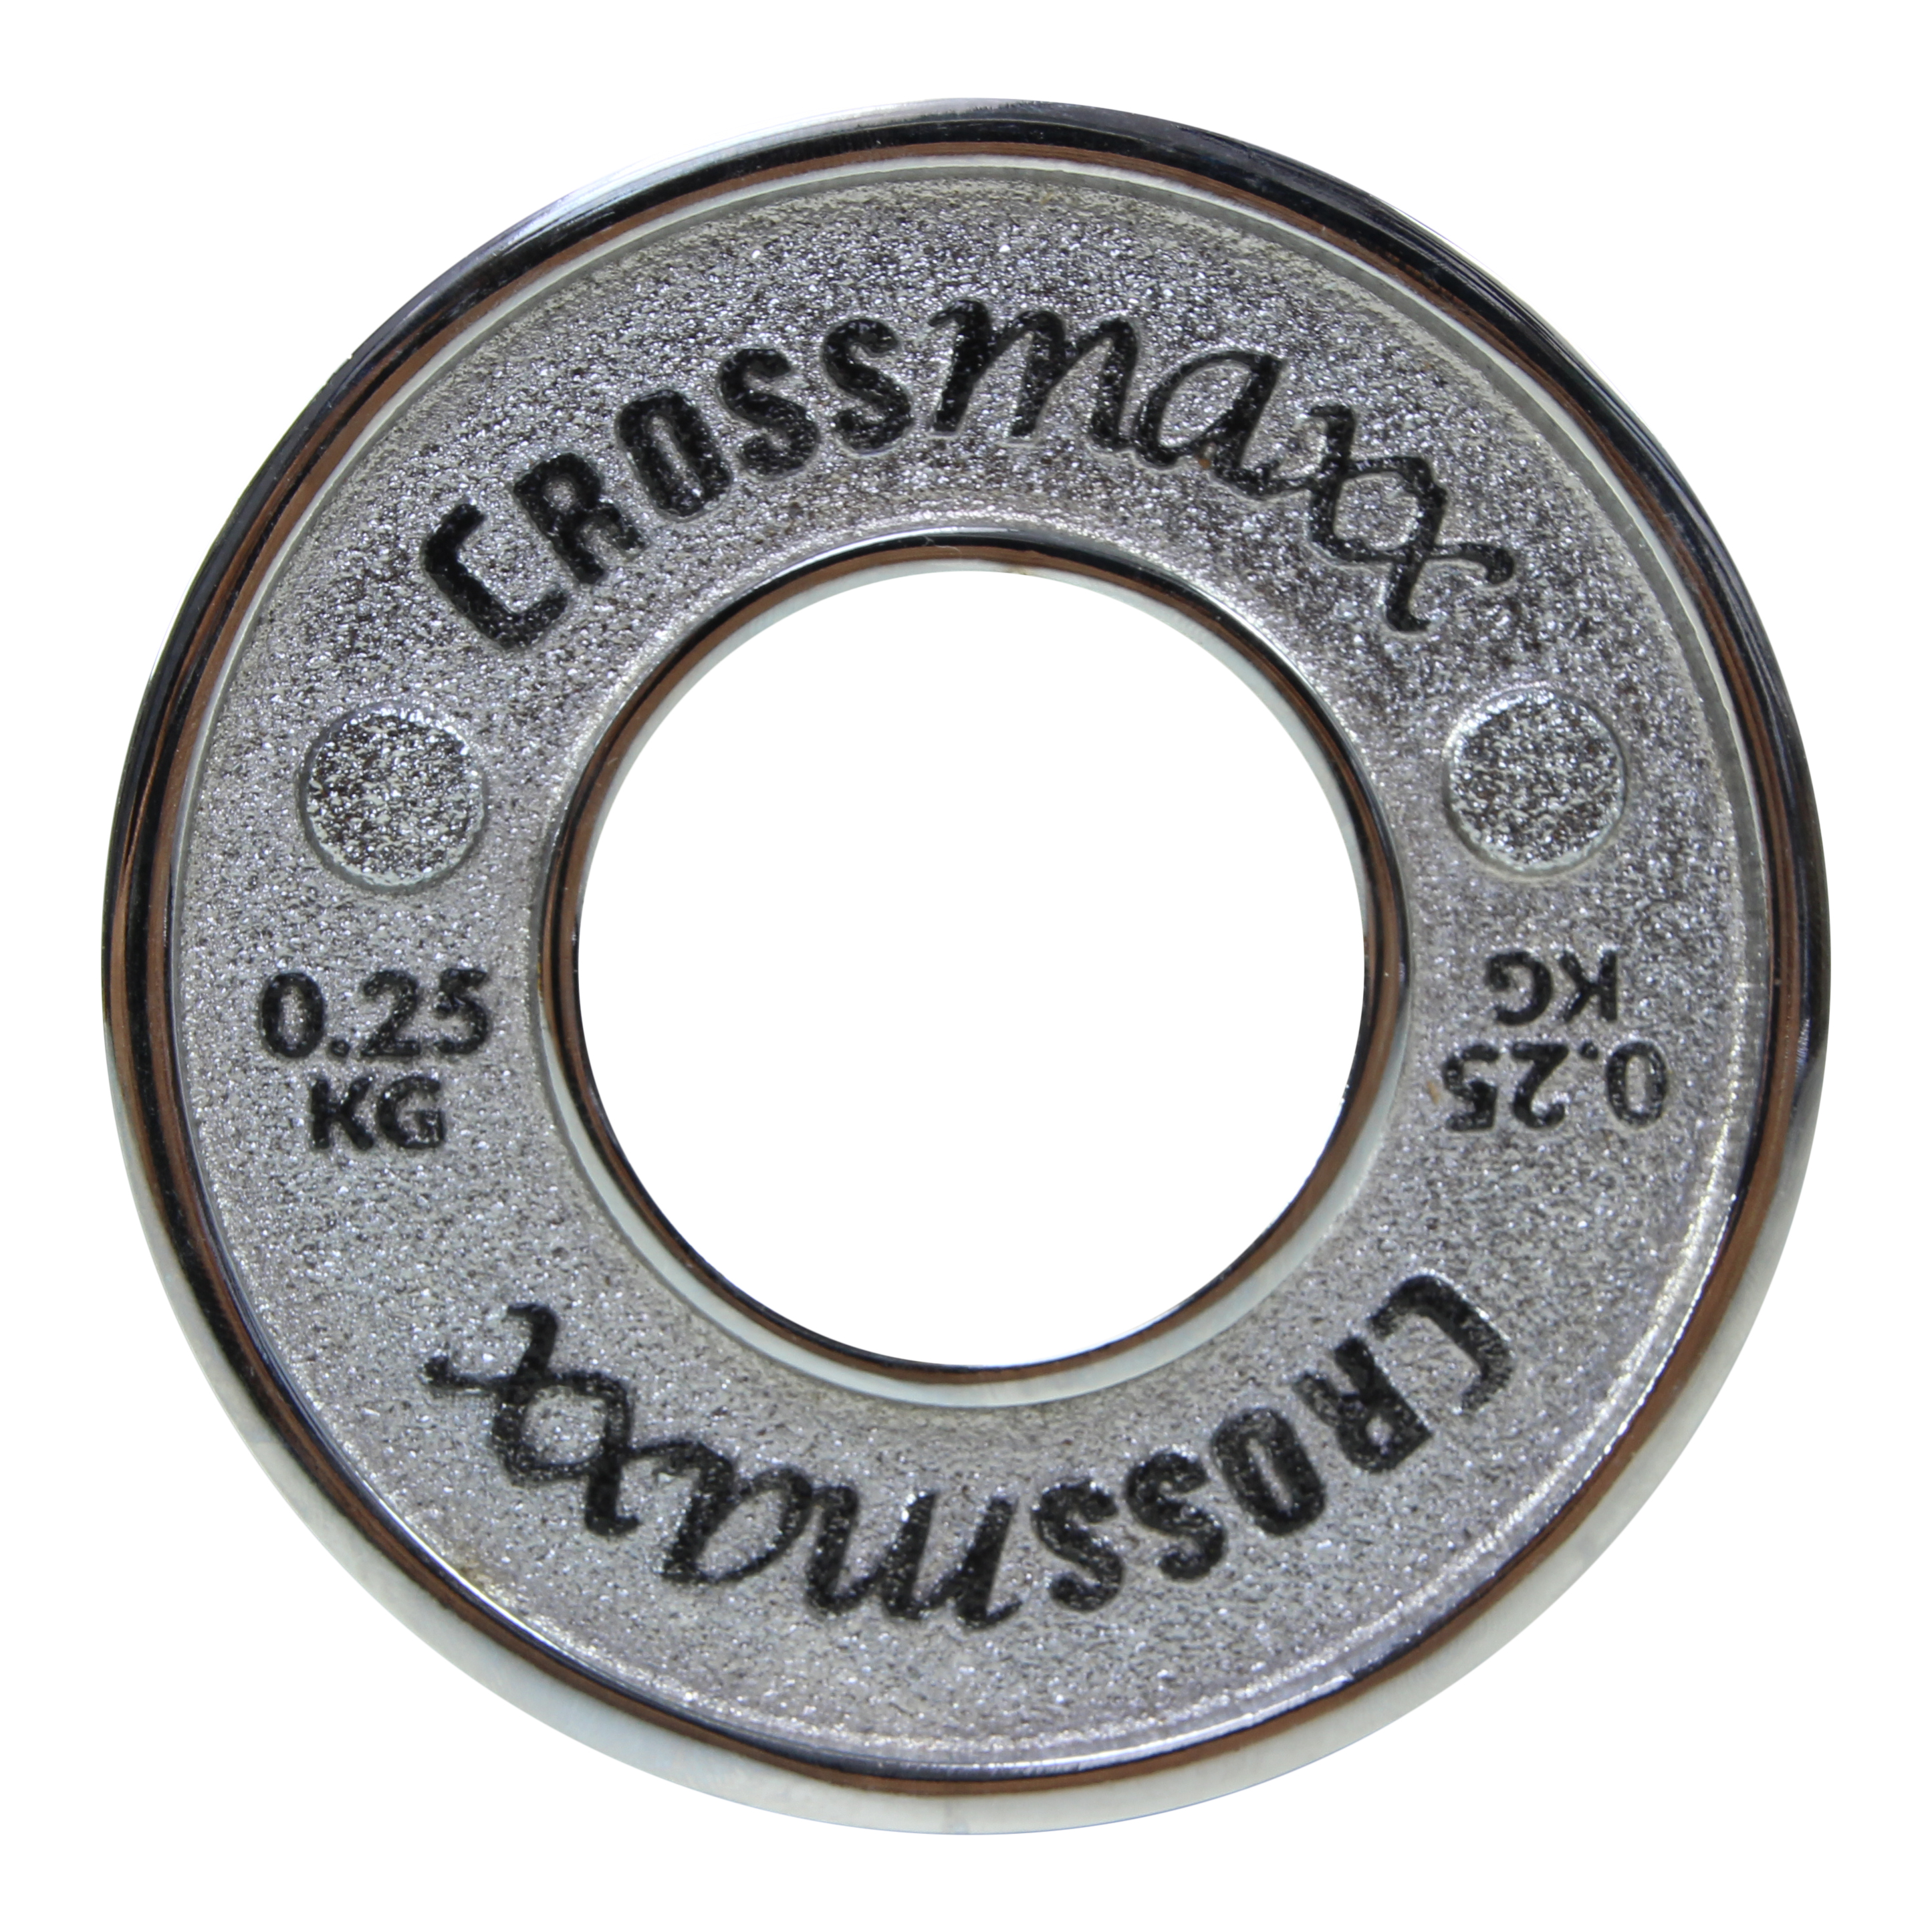 Brug Crossmaxx kalibreret vægtskive 0,25 kg i støbejern til styrkeløft til en forbedret oplevelse